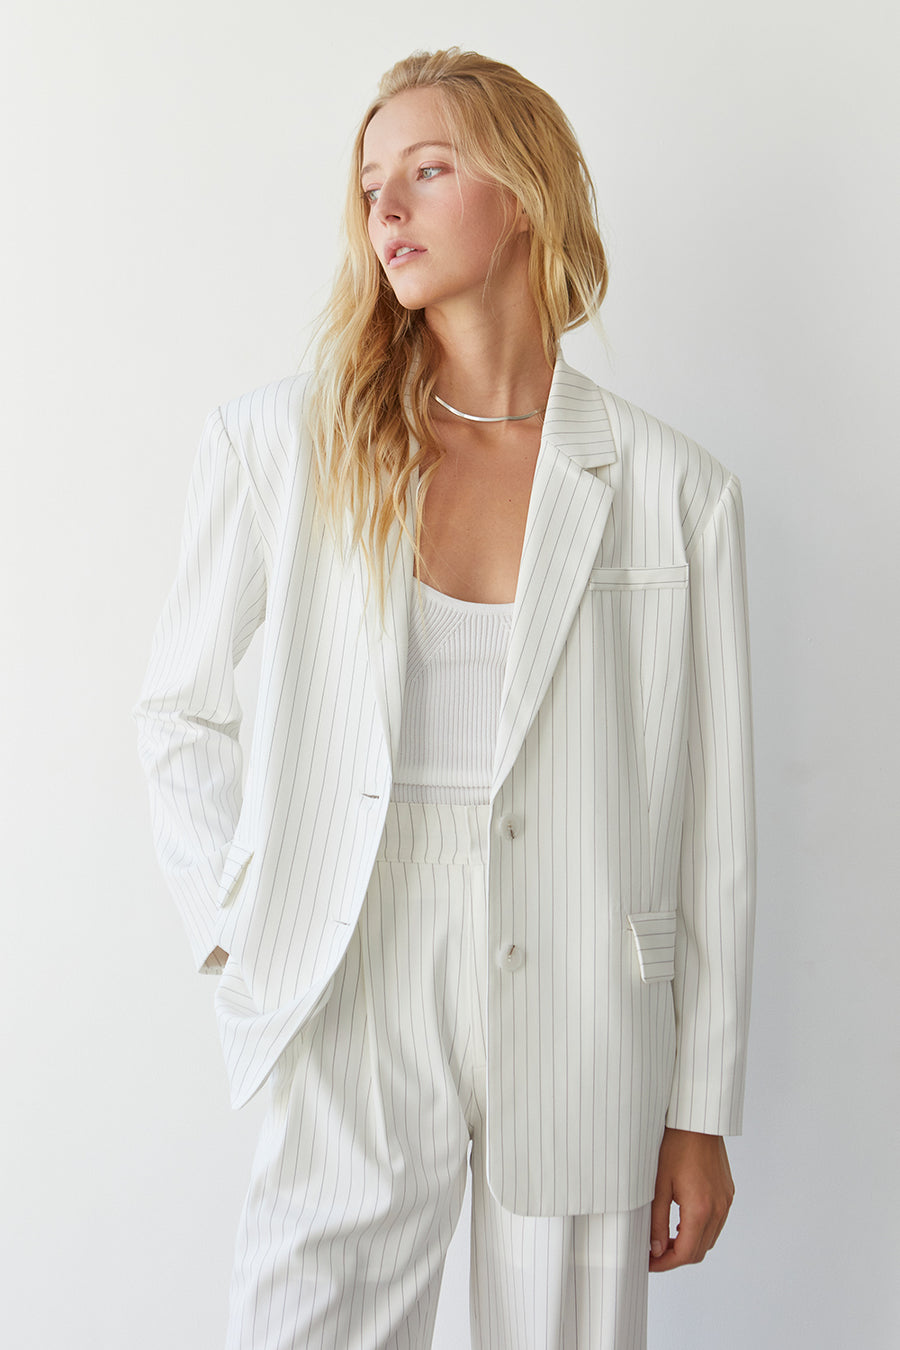 a model wearing a white pinstripe blazer and pants